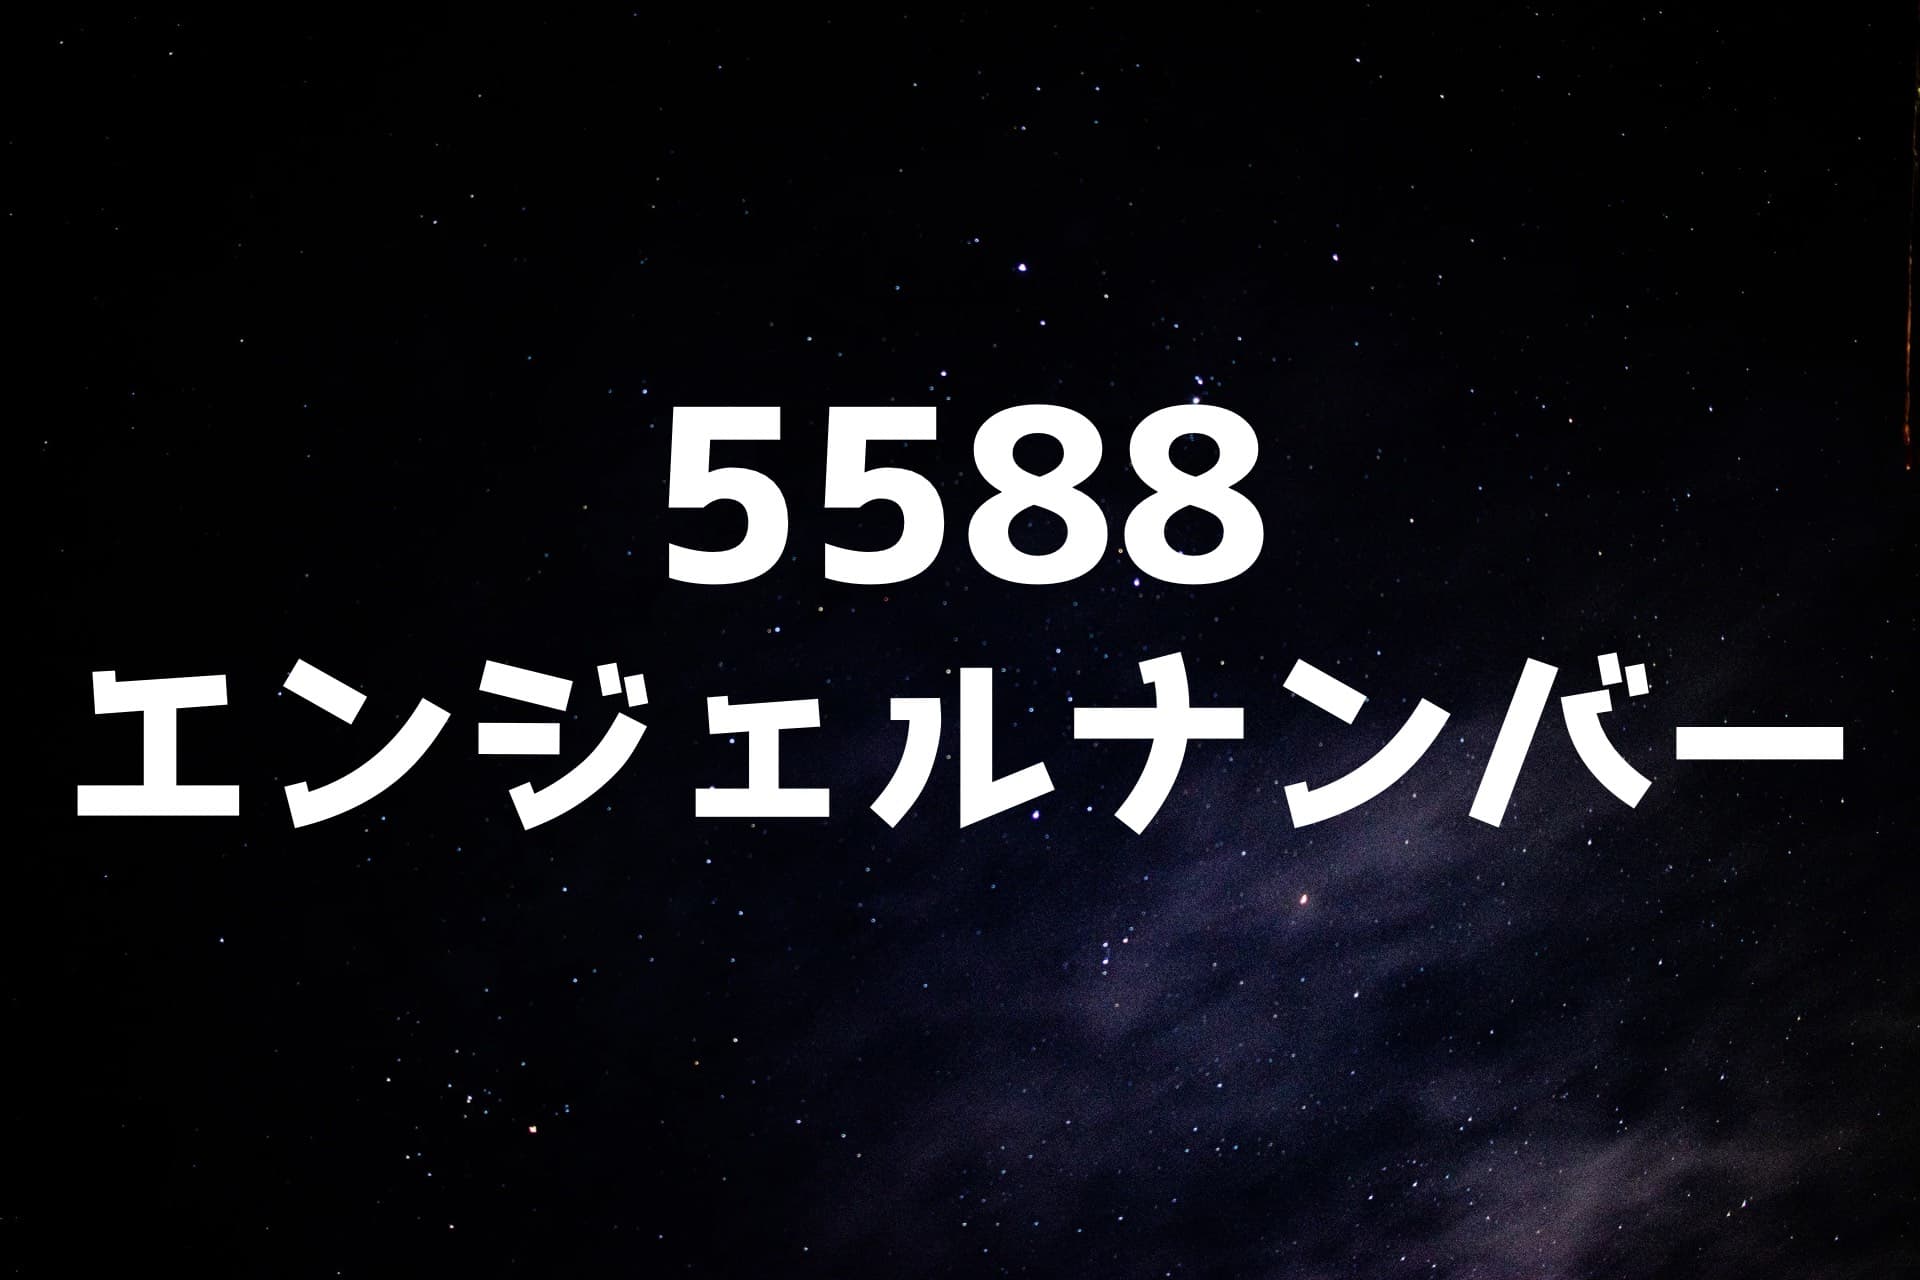 宇宙の背景に5588エンジェルナンバーの文字が書かれた画像